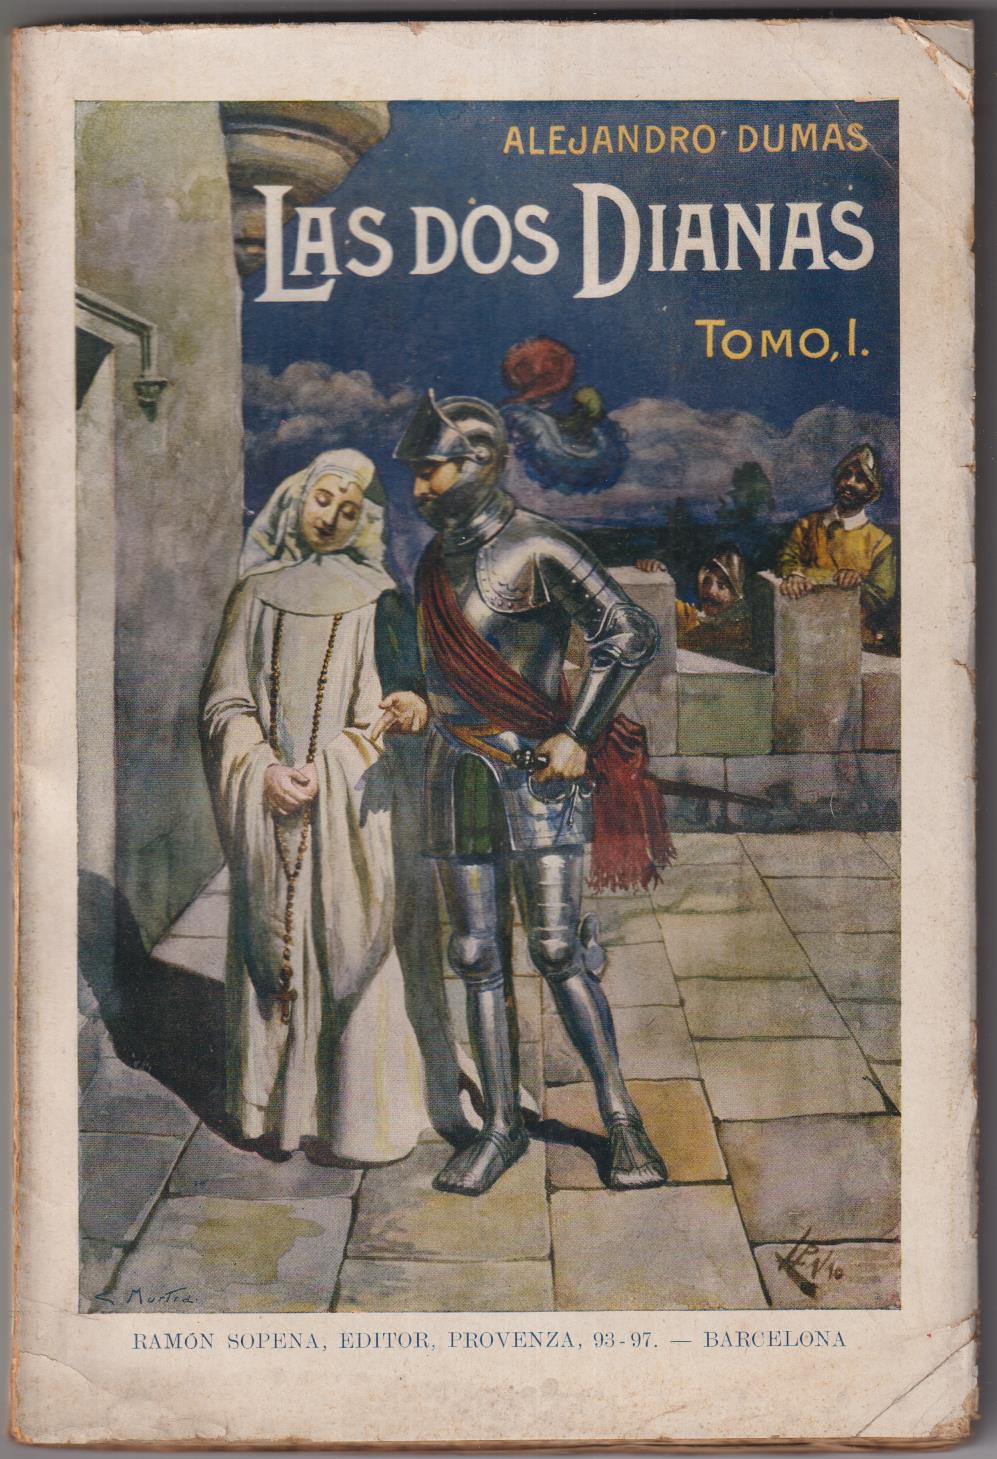 Alejandro Dumas. Las dos Dianas Tomo I. Ramón Sopena 1931. SIN ABRIR